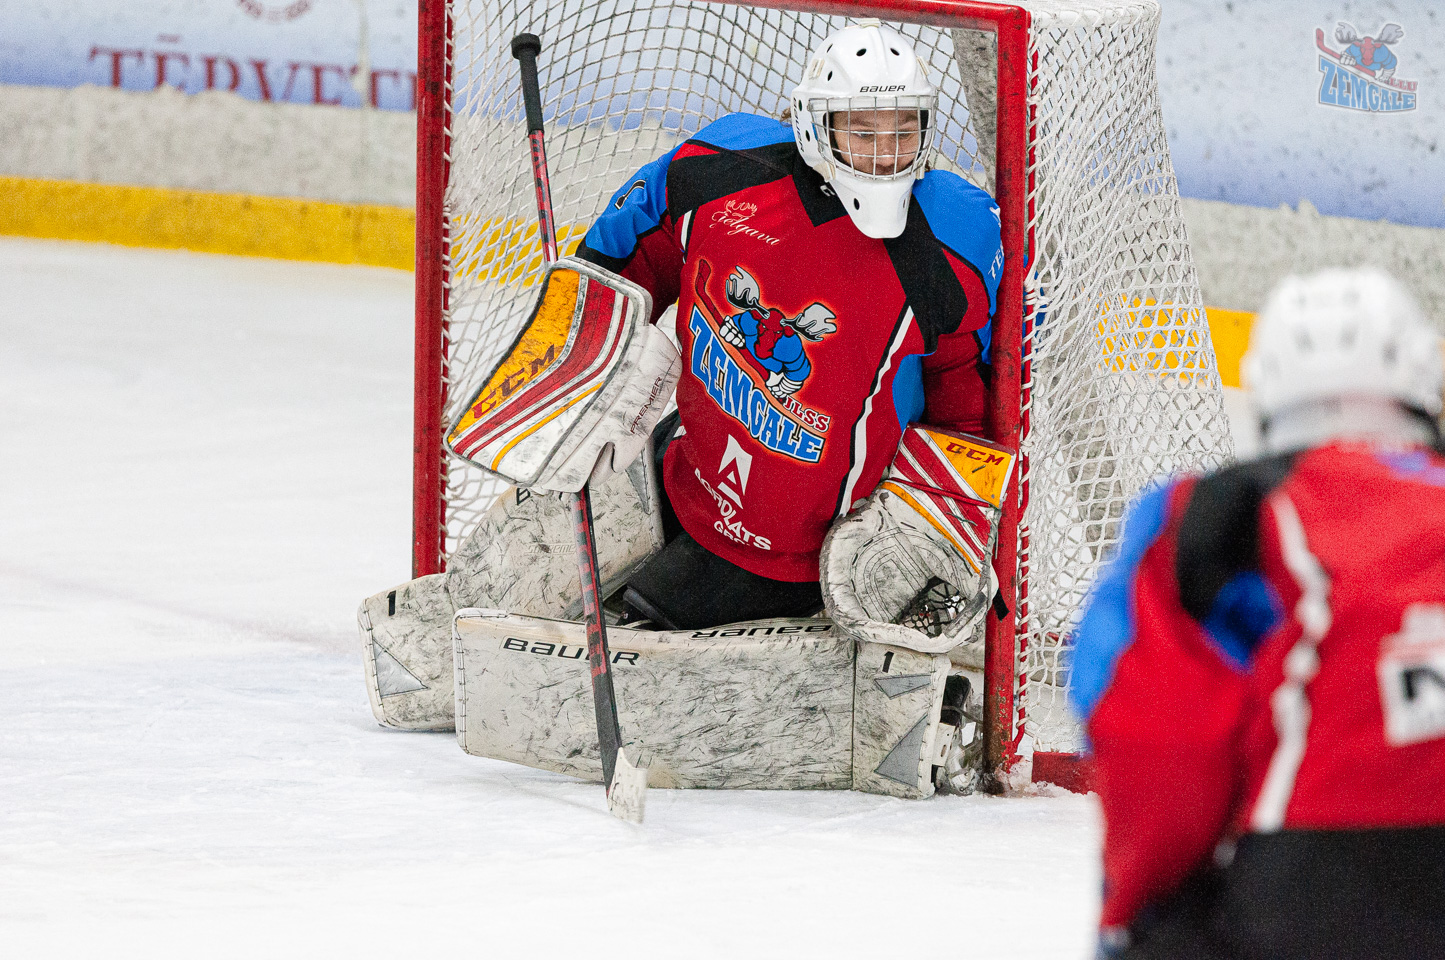 Latvijas bērnu un jauniešu hokeja čempionāta (LBJČH) U-17 vecuma grupas regulārā spēle starp “JLSS U17” un HS “Rīga 2004” Jelgavas ledus hallē 2020. gada 5. janvārī | Foto: Ruslans Antropovs / rusantro.com